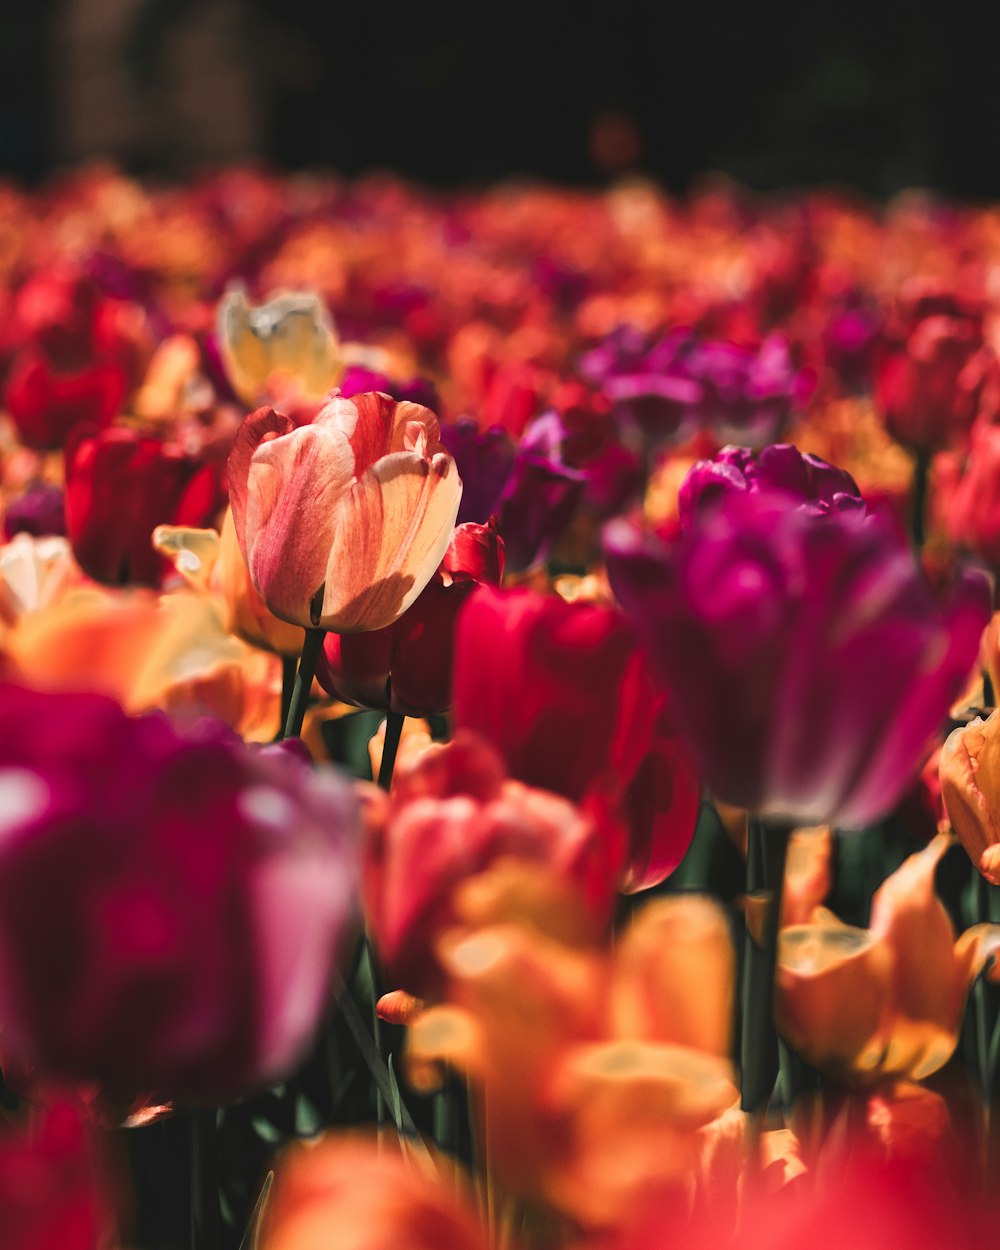 Campo de flores de tulipanes morados y naranjas